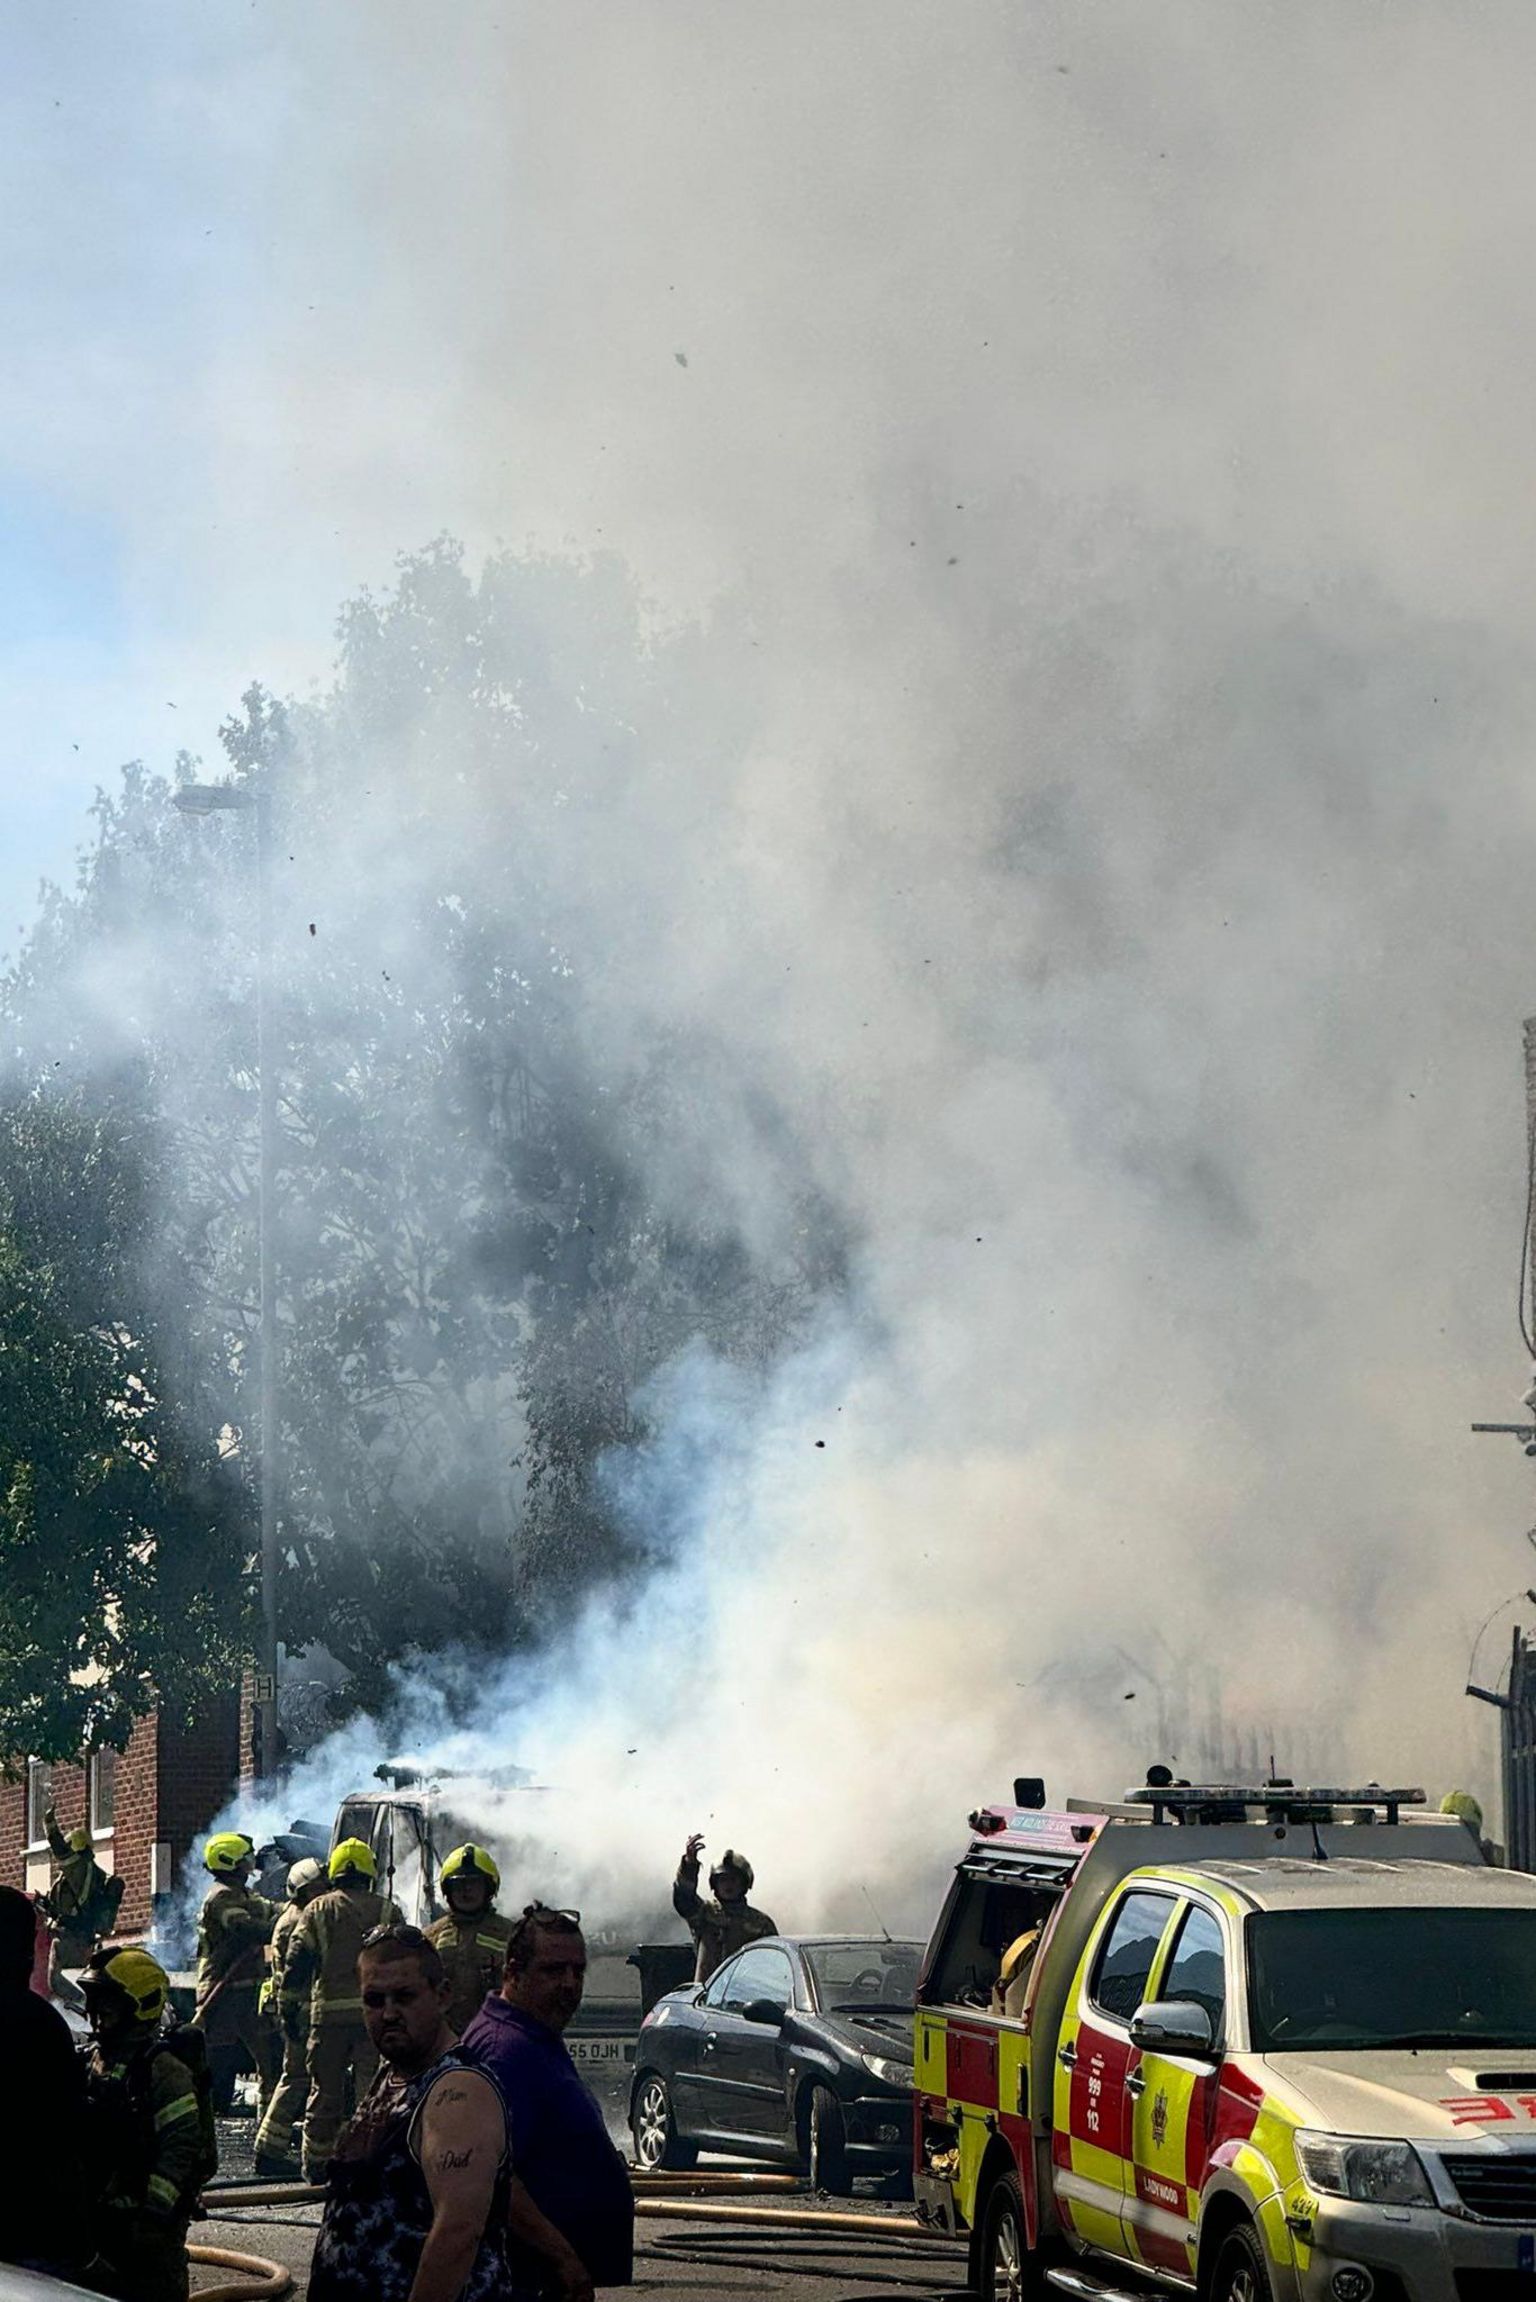 A fire in Aston, Birmingham